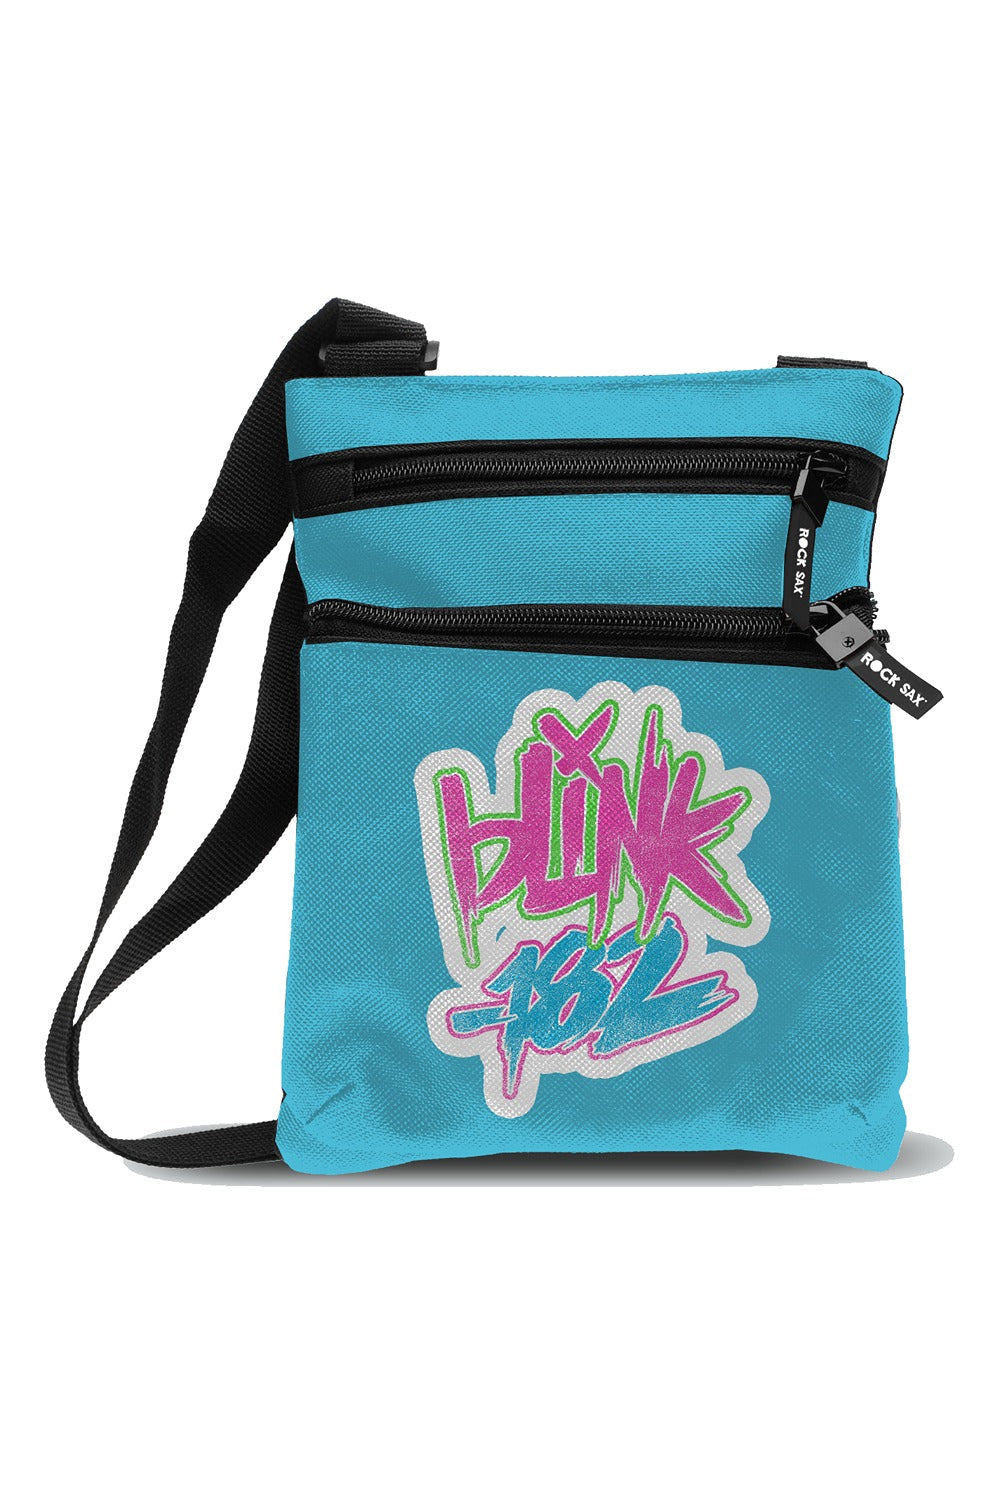 Blink 182 Body Bag - Logo Blue